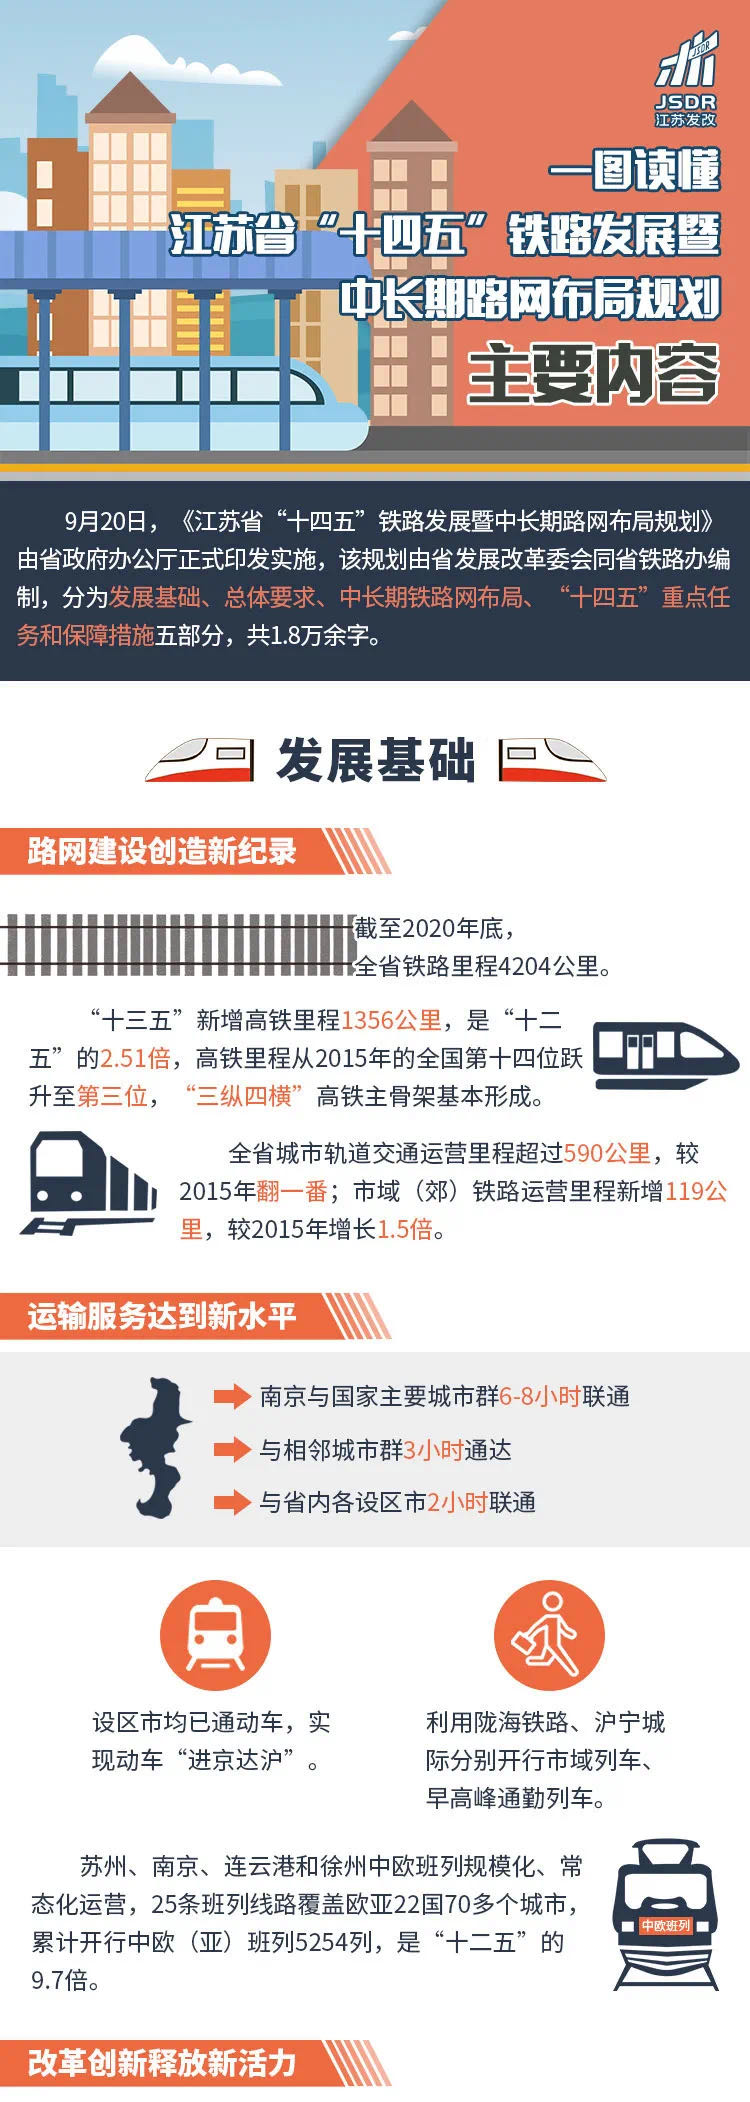 
中国高亚博买球网址铁从无到有:运营里程近4万公里稳居世界第一(图)